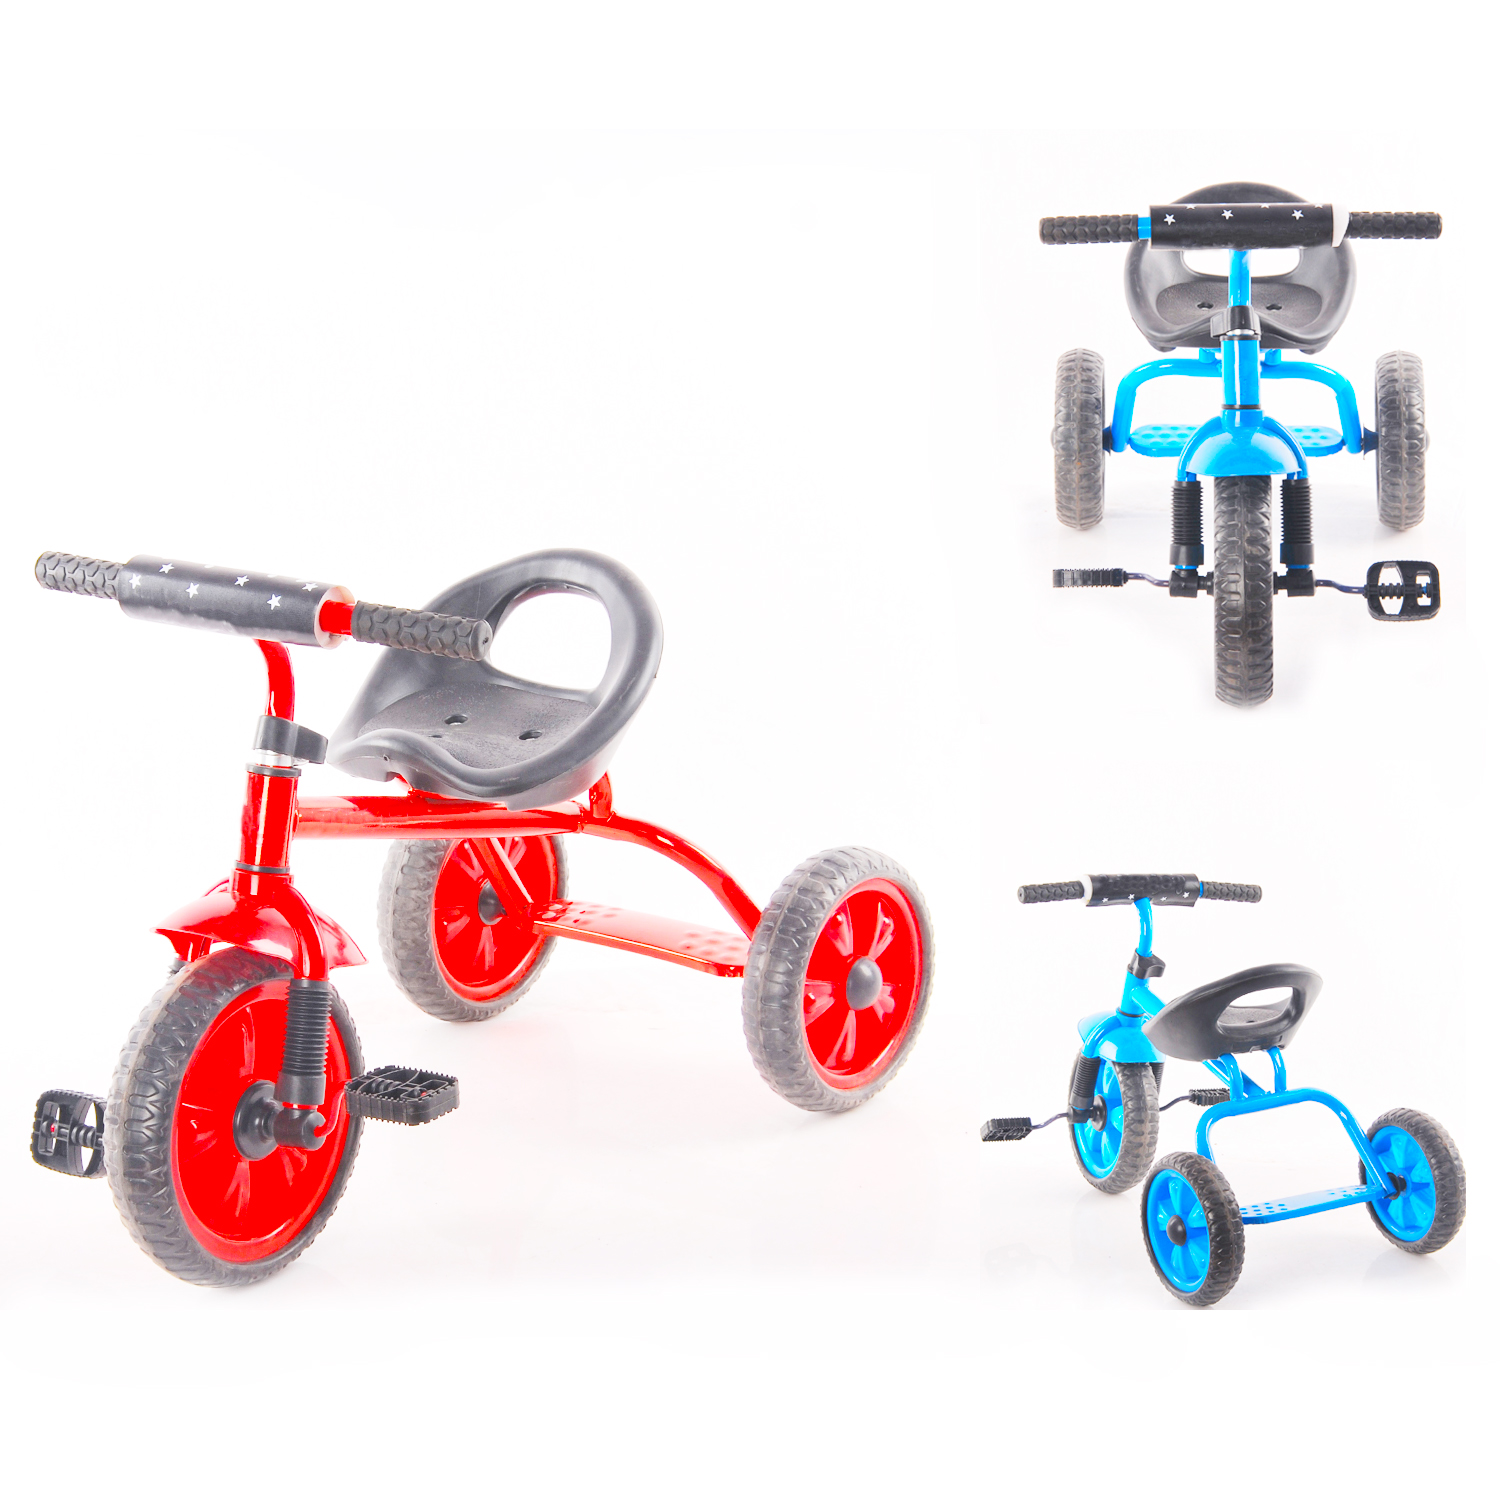 Колеса на детский трехколесный велосипед. Трехколесный велосипед Чижик t005. Велосипед 3-х колесный "Чижик". Детский 3 колесный велосипед Чижик. Велосипед Чижик 3-х колесный с ручкой.